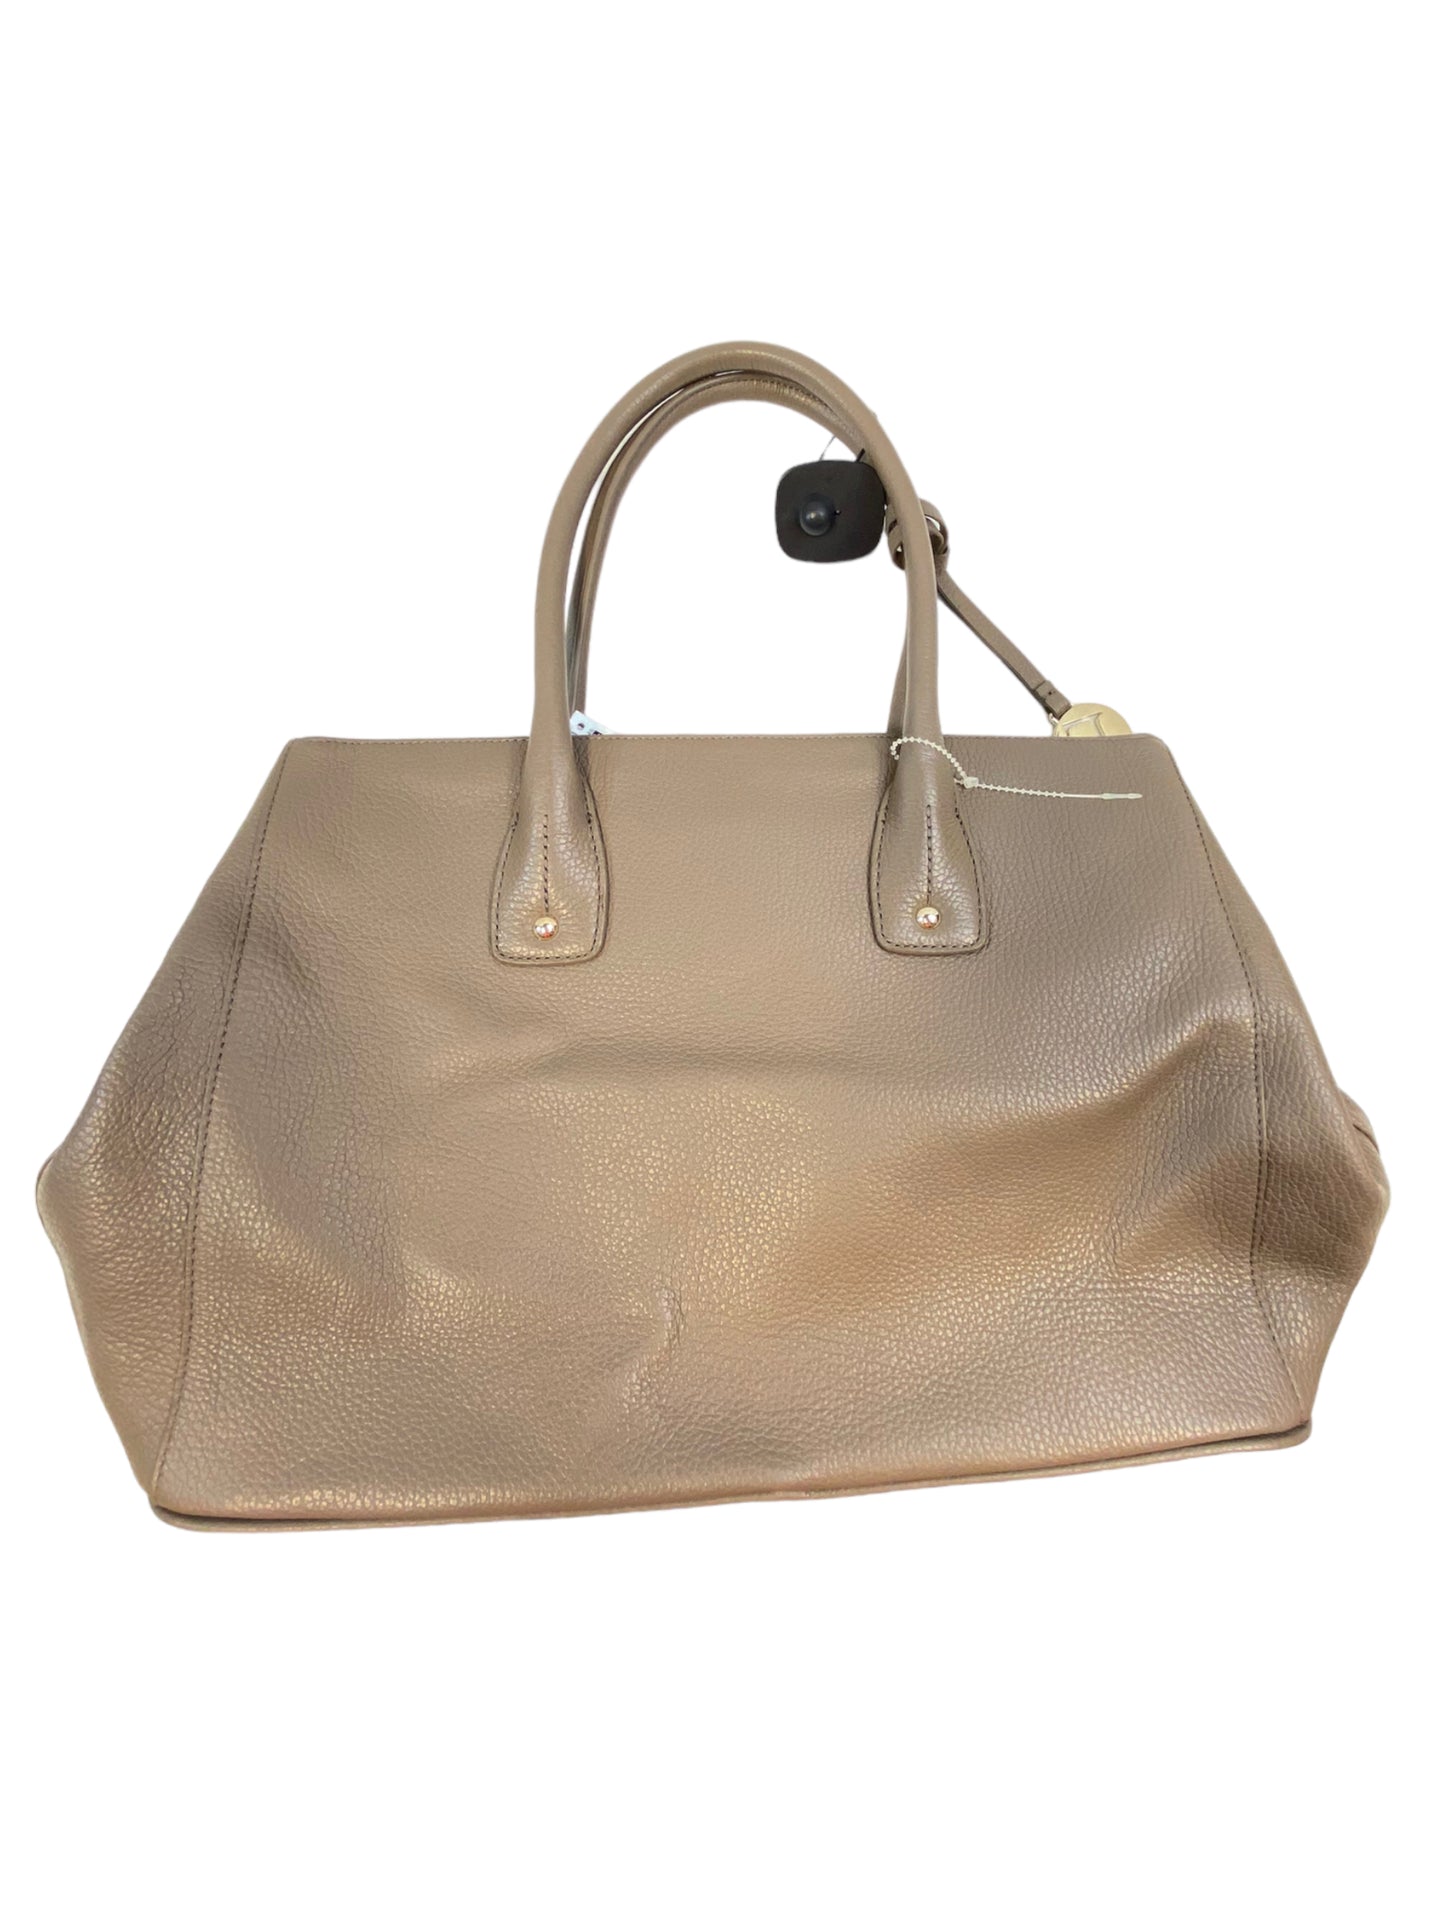 Handbag Designer By Furla  Size: Large